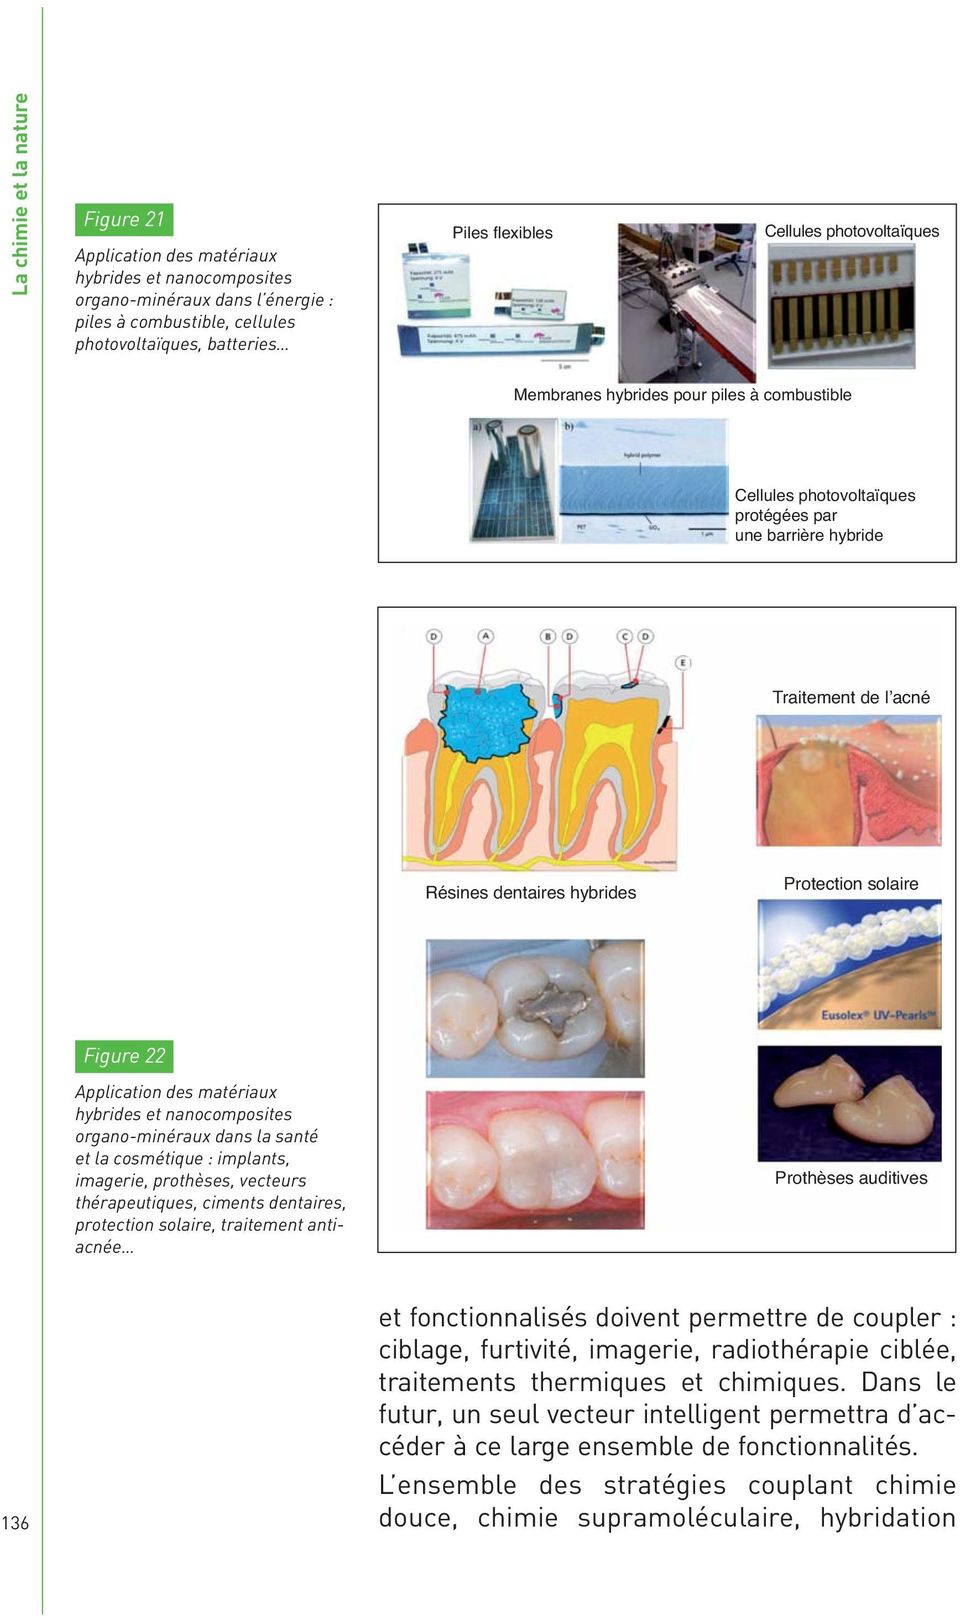 Figure 22 Application des matériaux hybrides et nanocomposites organo-minéraux dans la santé et la cosmétique : implants, imagerie, prothèses, vecteurs thérapeutiques, ciments dentaires, protection